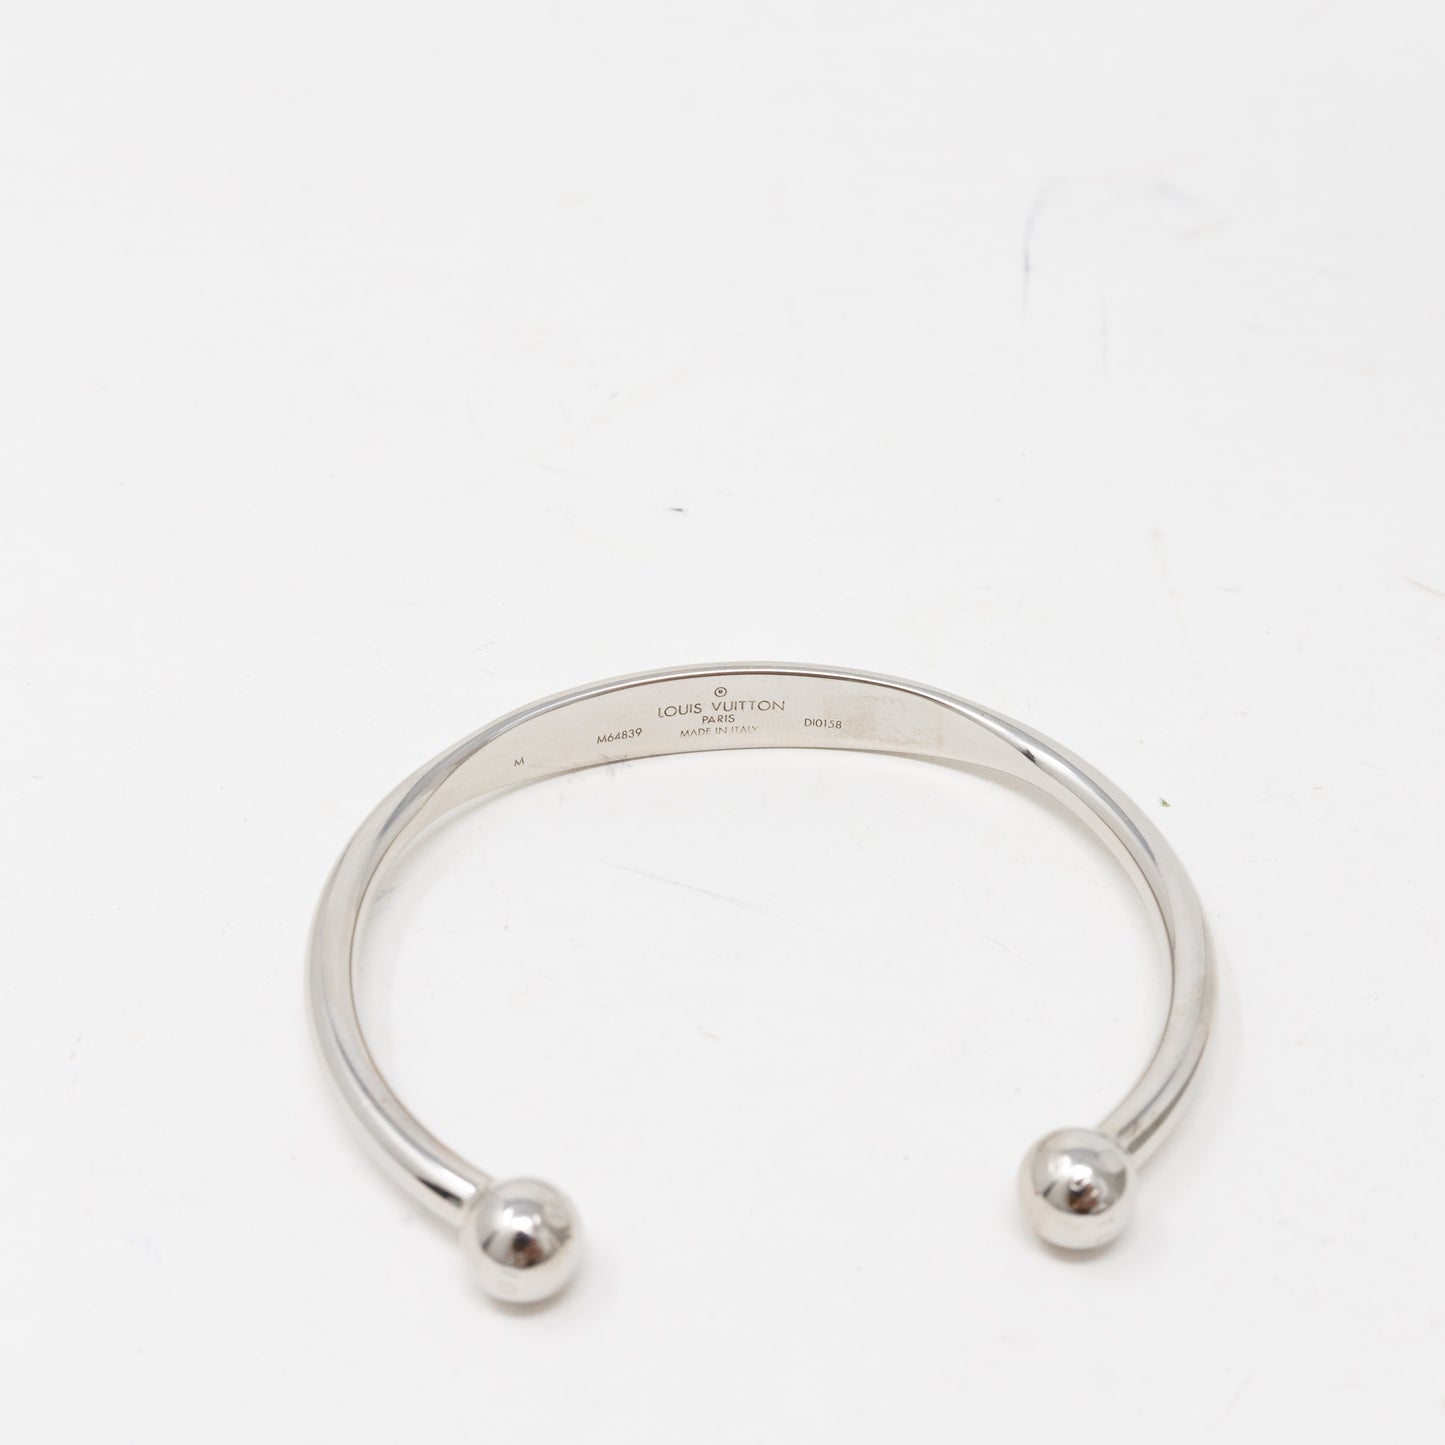 LOUIS VUITTON Monogram Jonc Bangle Bracelet Size M Silver Metal M64839 with  Box